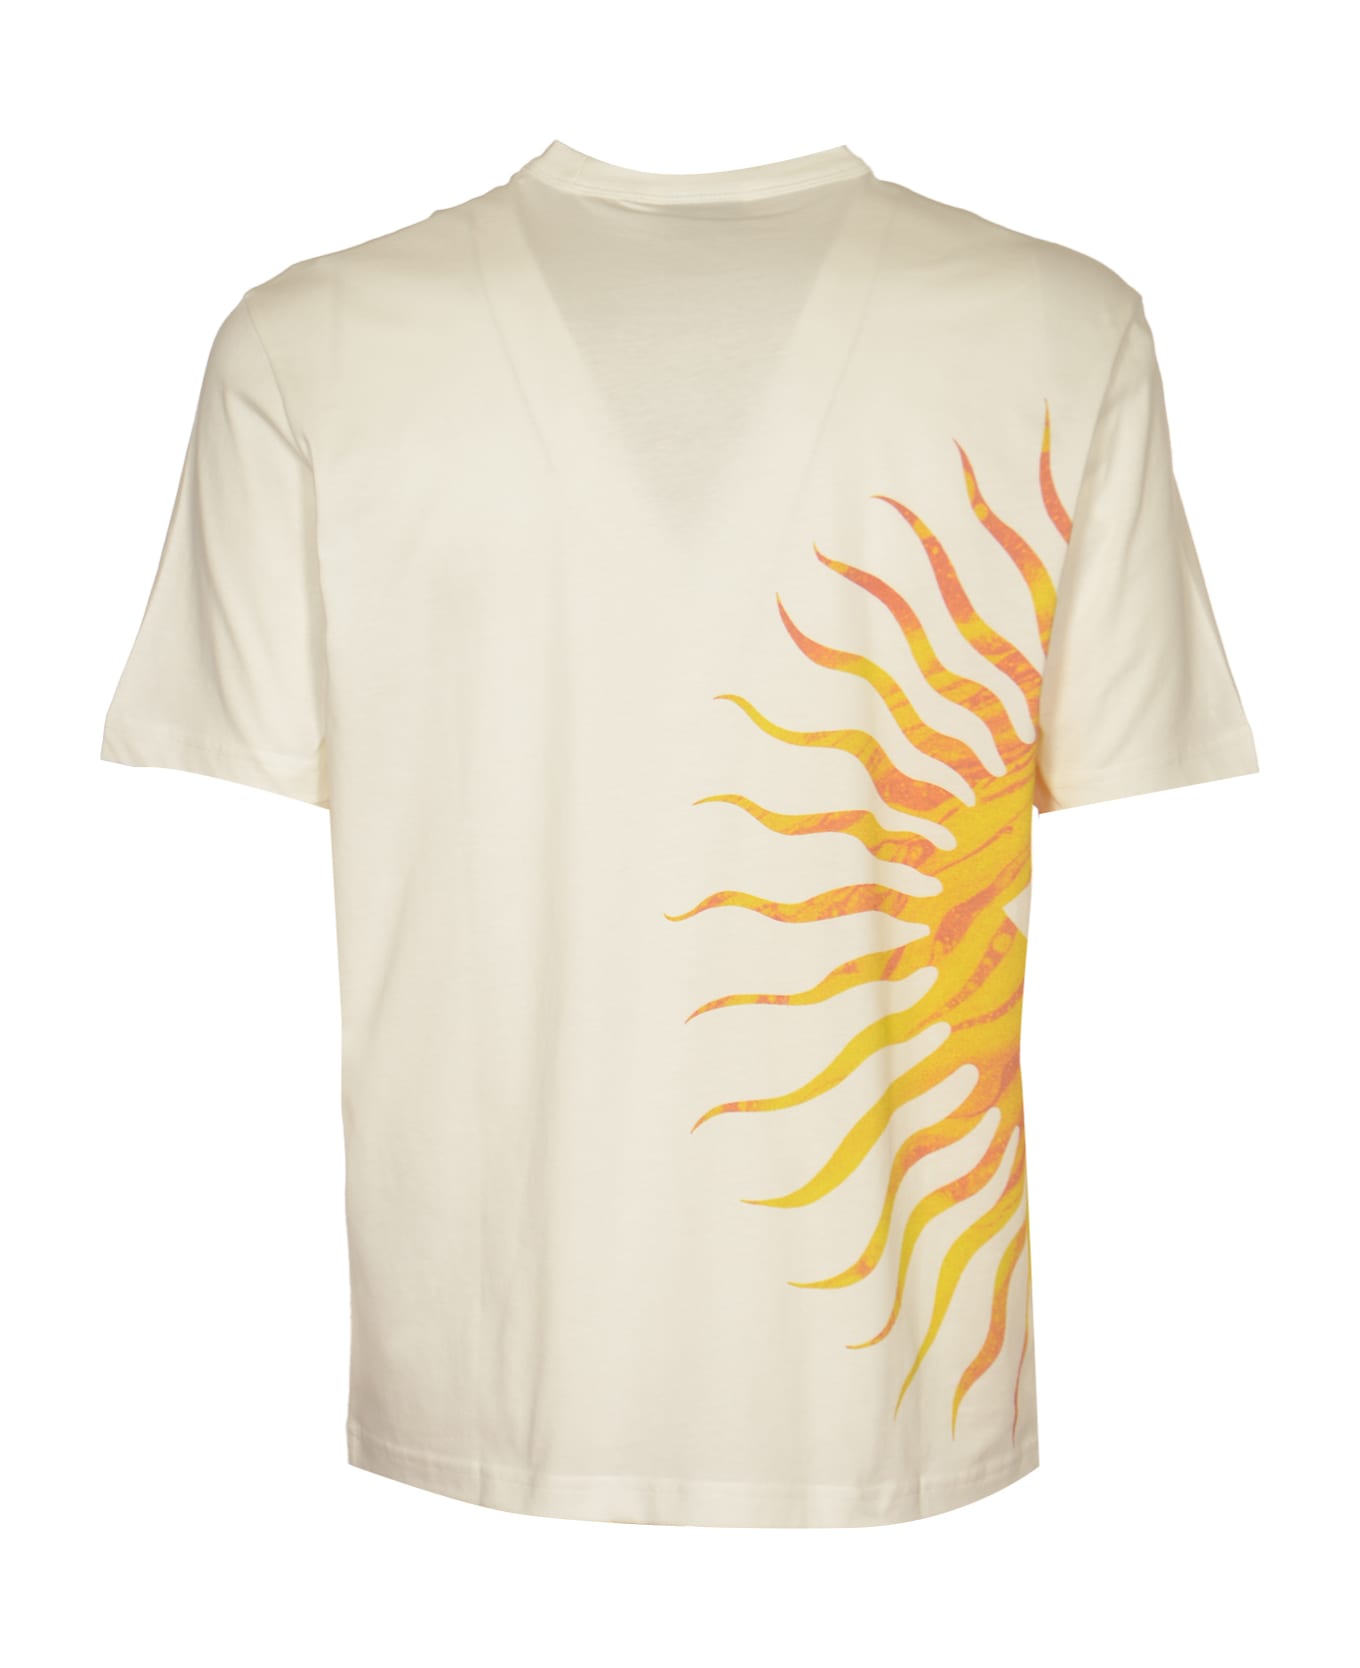 Paul Smith Sunnyside T-shirt - Beige シャツ